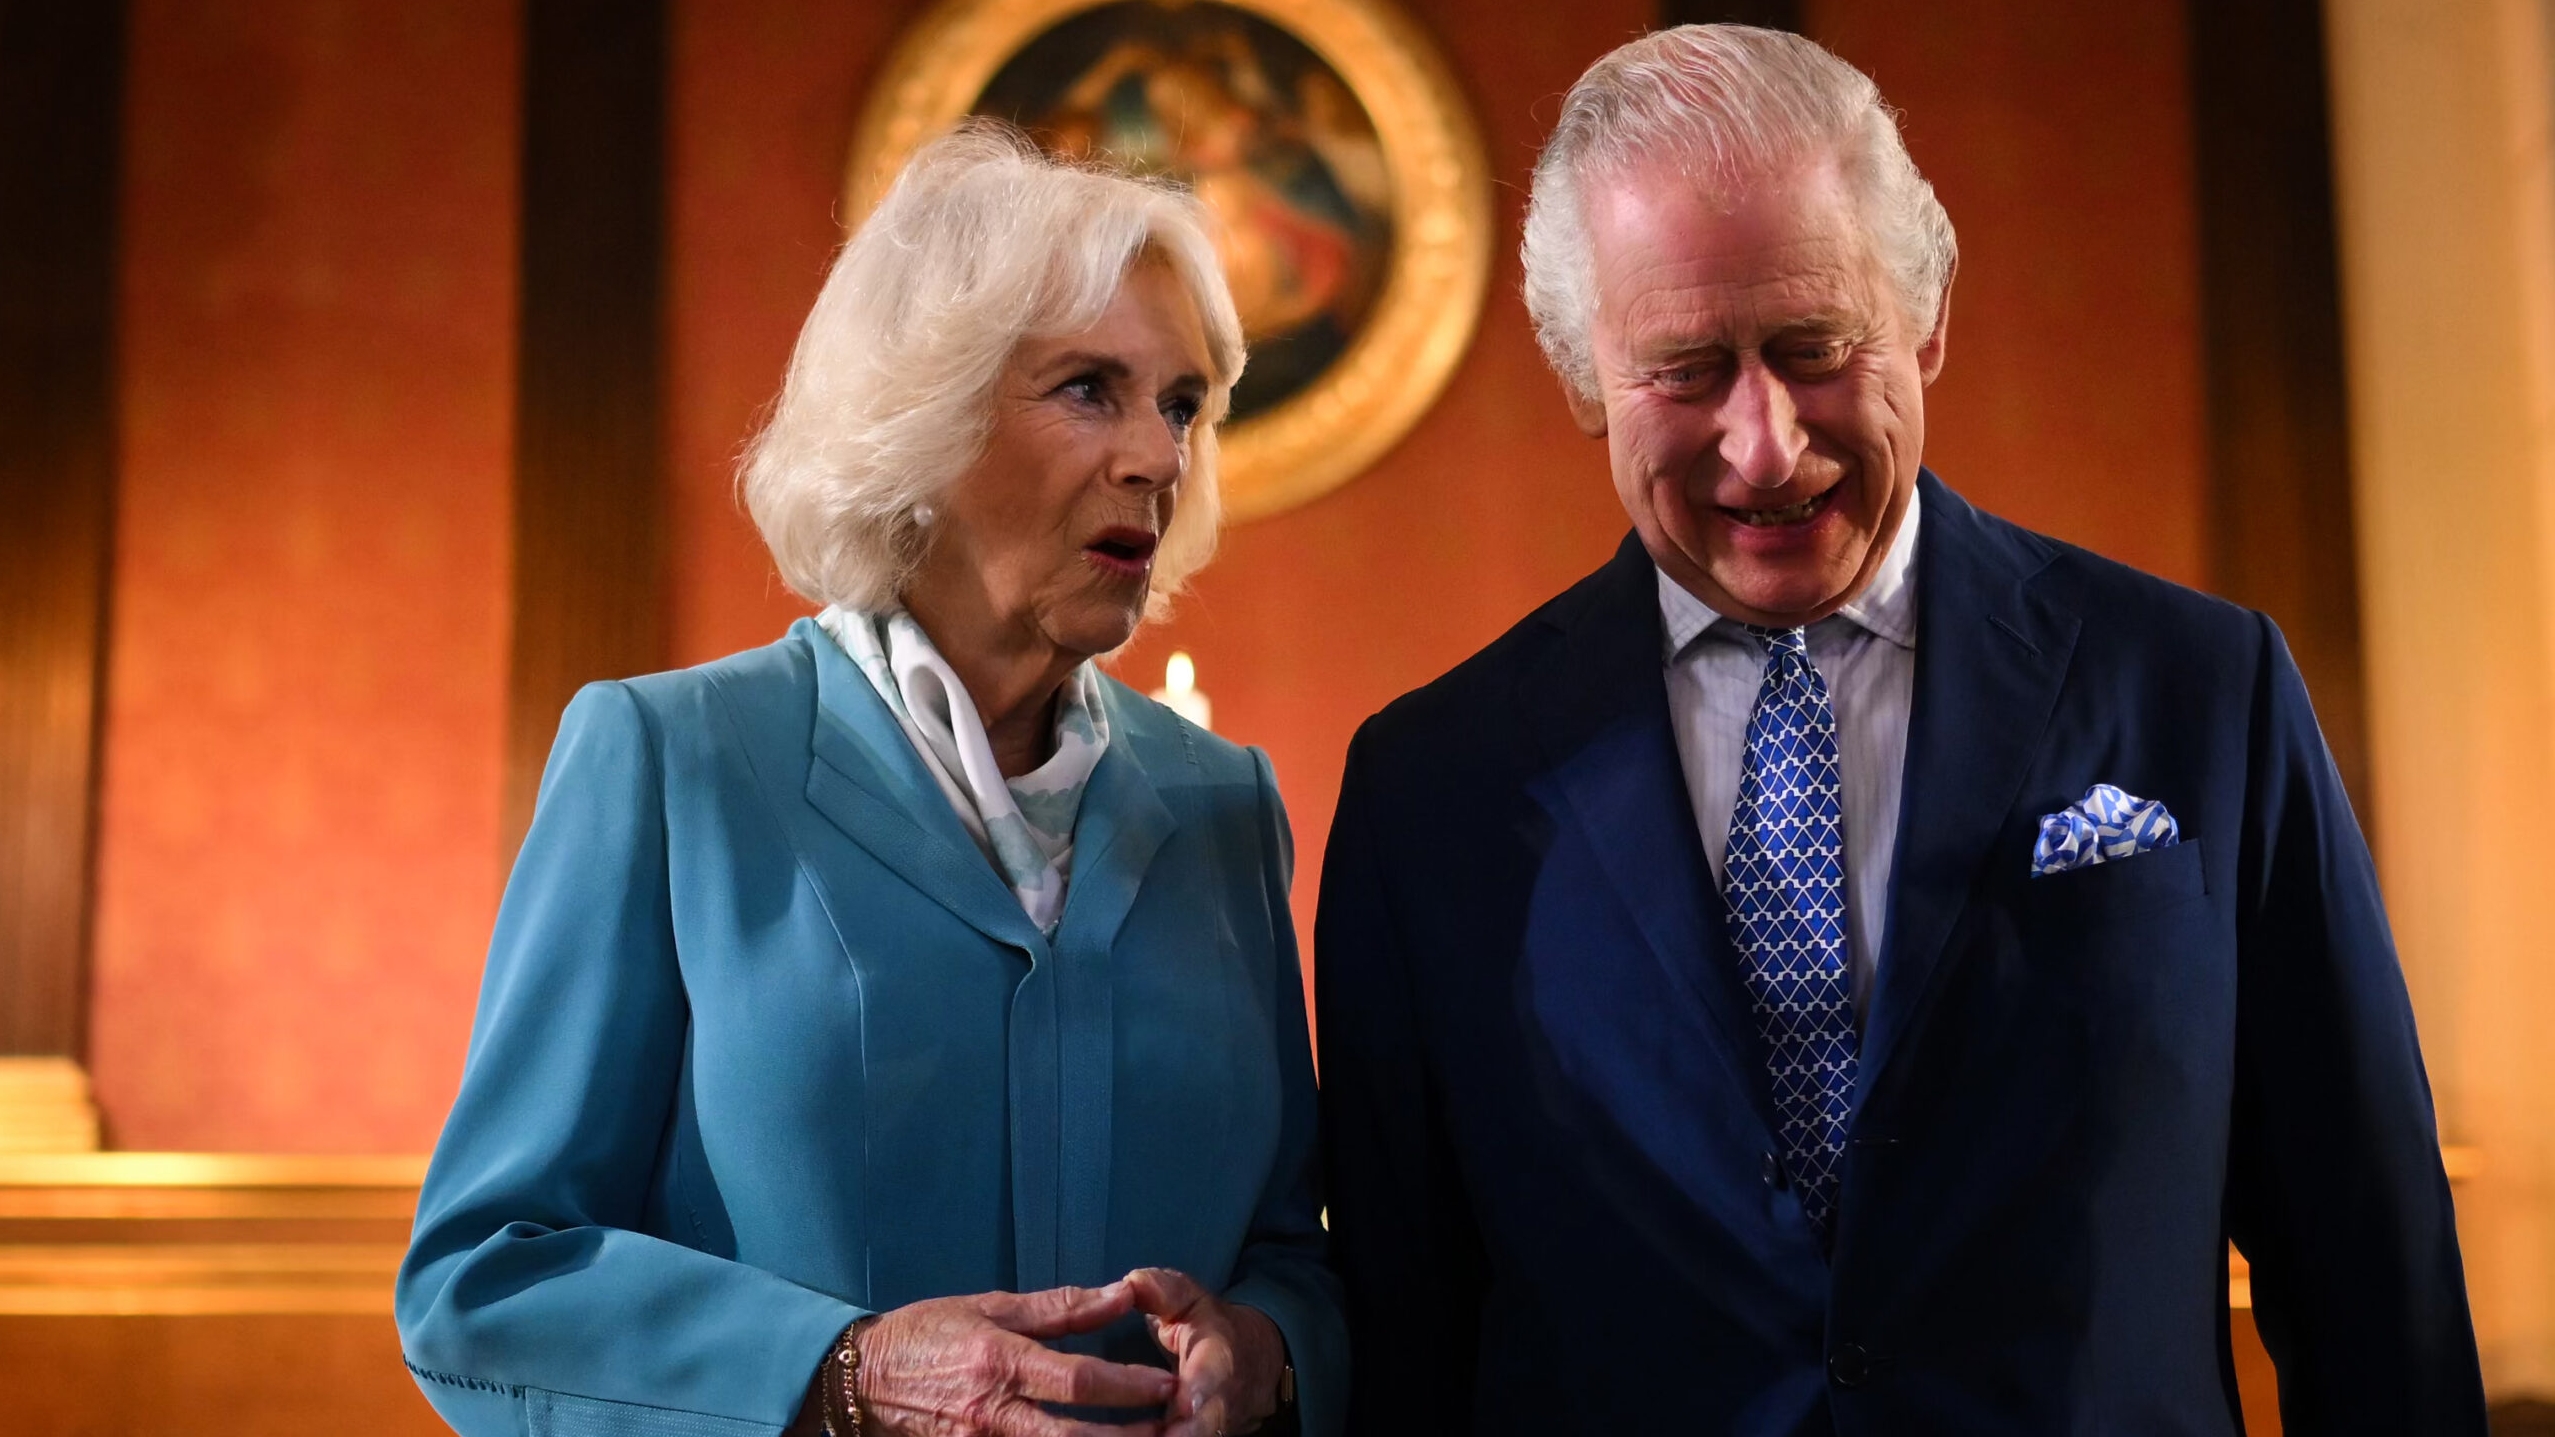 Rainha Camilla se pronuncia sobre a condição de saúde de Charles III Lorena Bueri